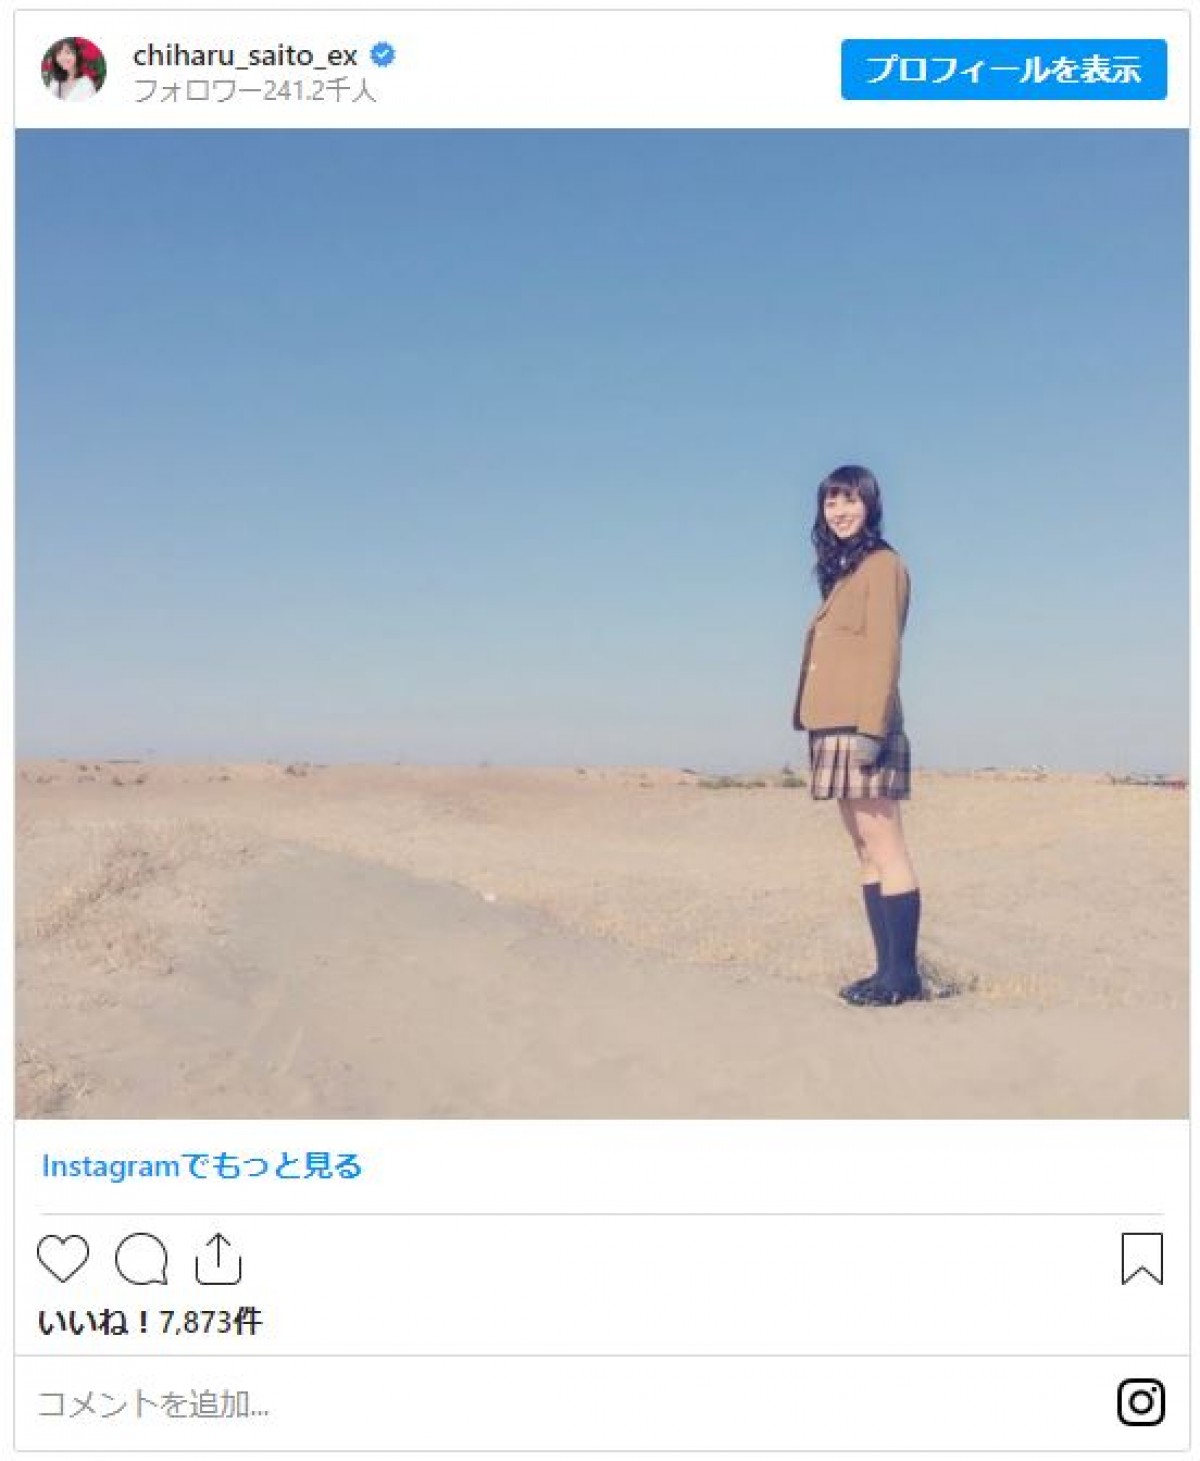 斎藤ちはるアナ「入社前…？」の写真公開　「ホント美人」「キレイなお姉さん」